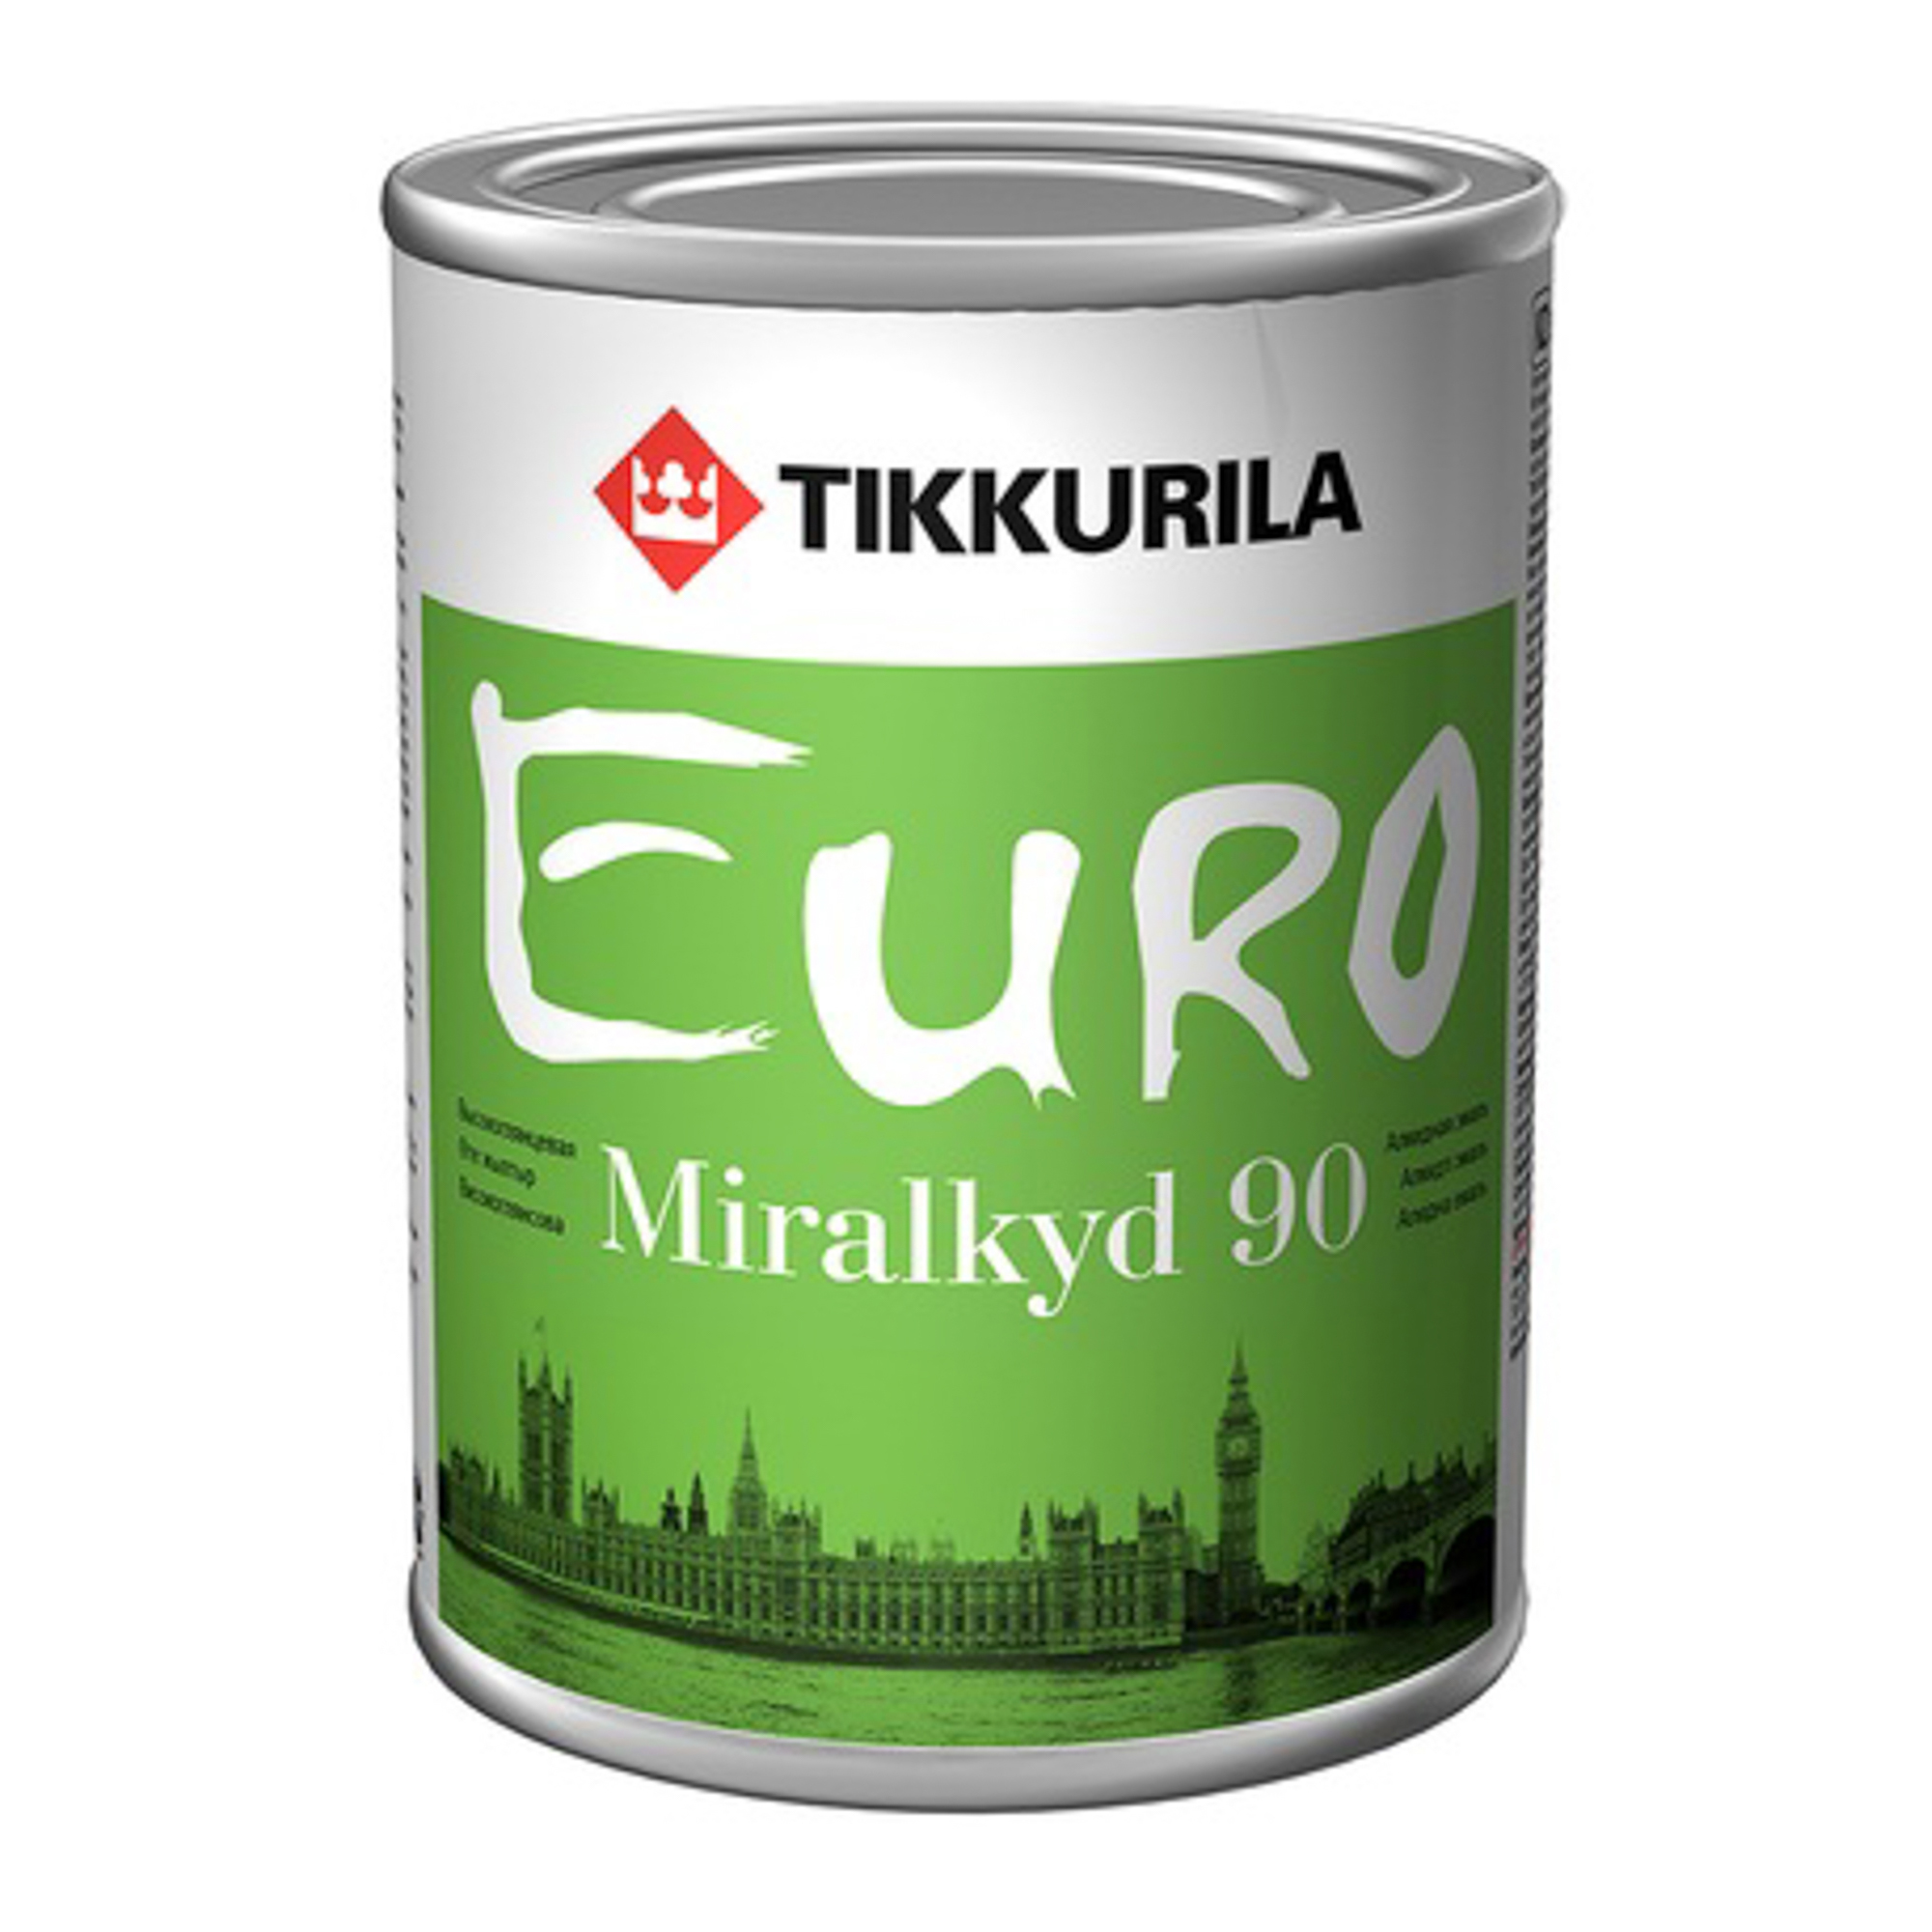 Эмаль алкидная высокоглянцевая Tikkurila Euro Miralkyd 90 база с 0.9л